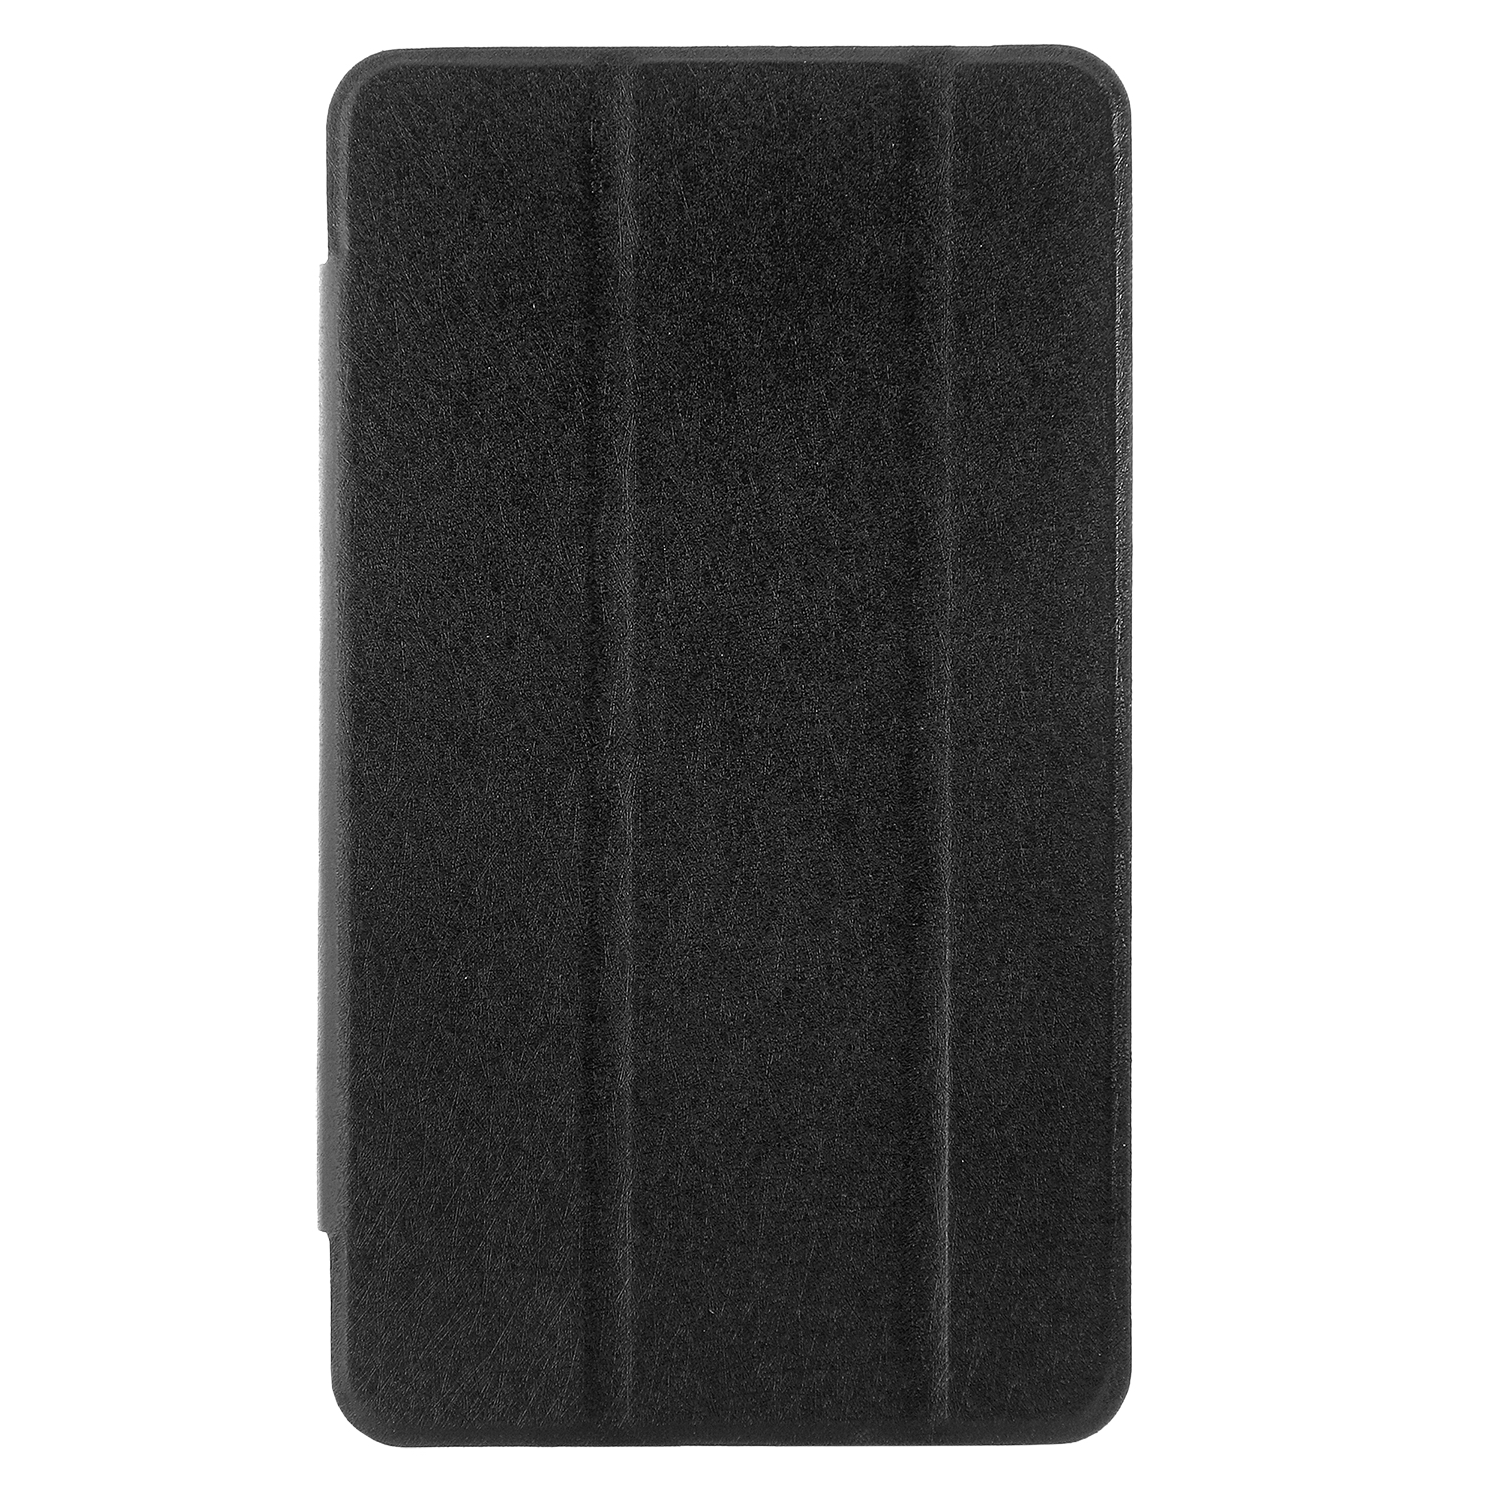 Чехол откидной Huawei MediaPad M6 8.4 Trans Cover чёрный